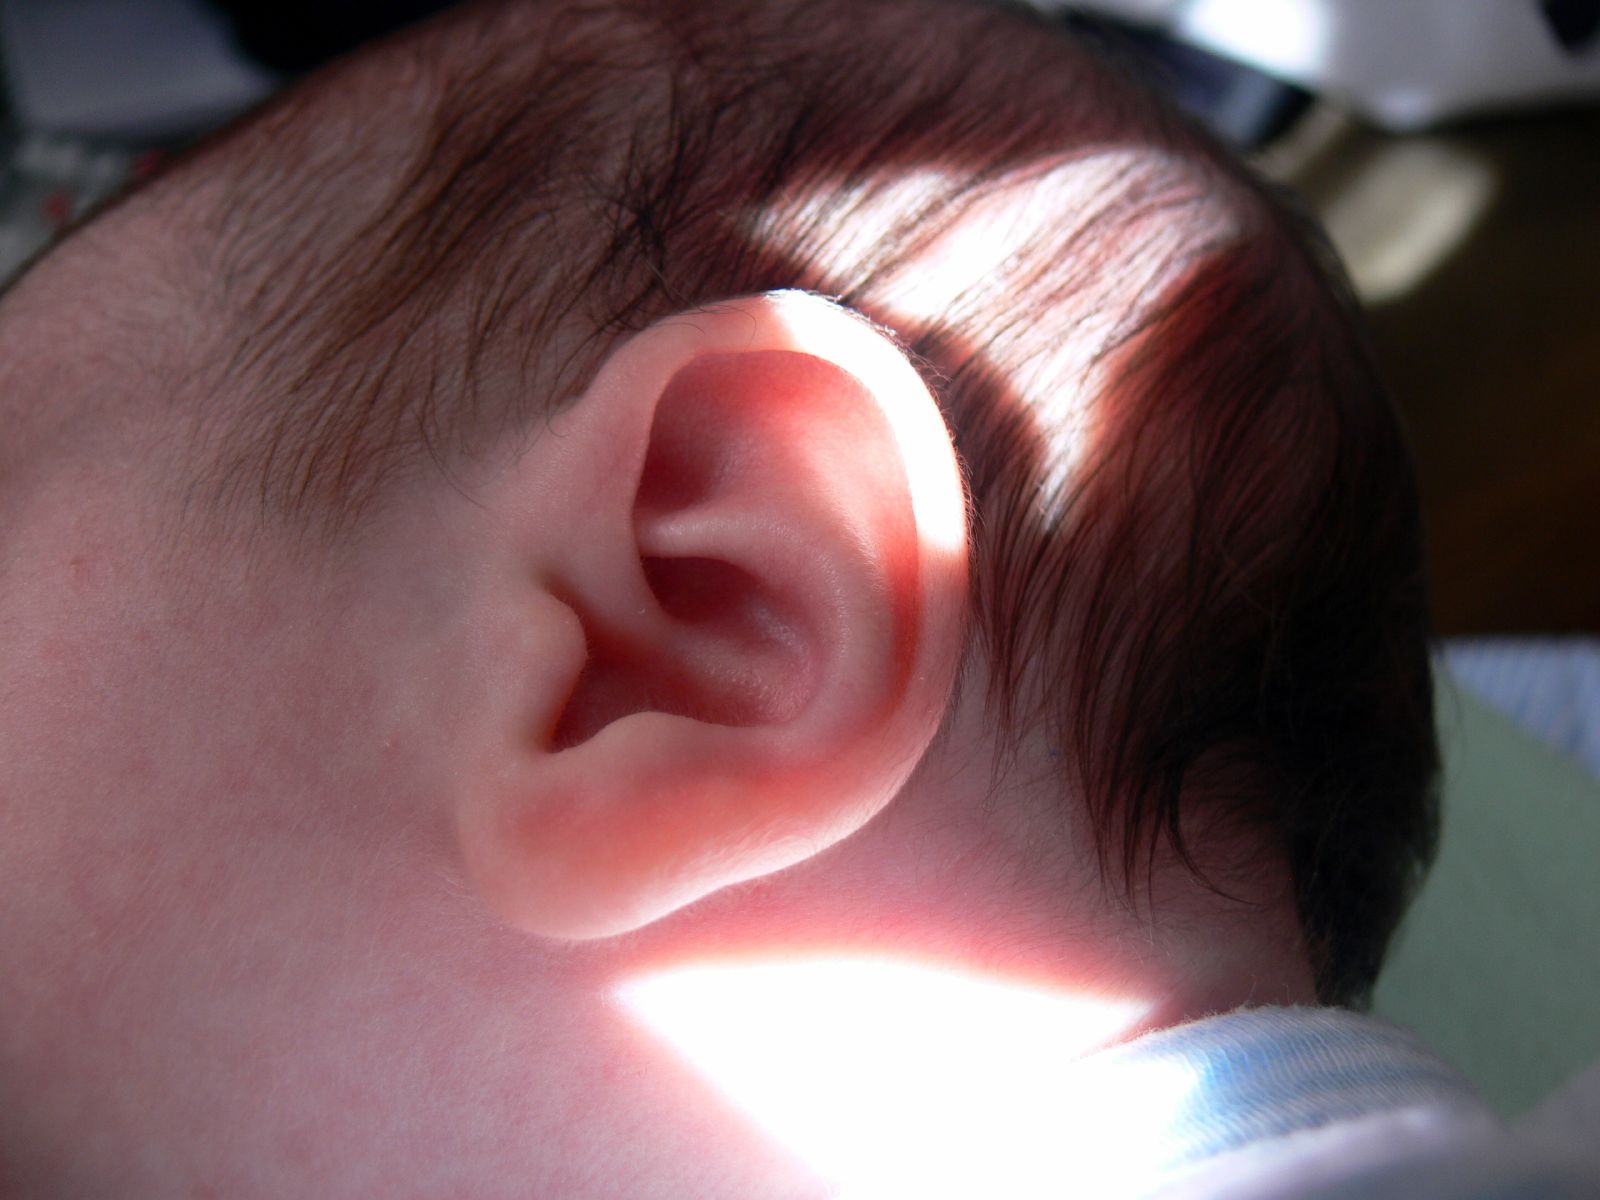 El cerebro de los bebés funciona mejor cuando oyen sílabas comunes. Imagen: jessicafm. Fuente: Flickr.